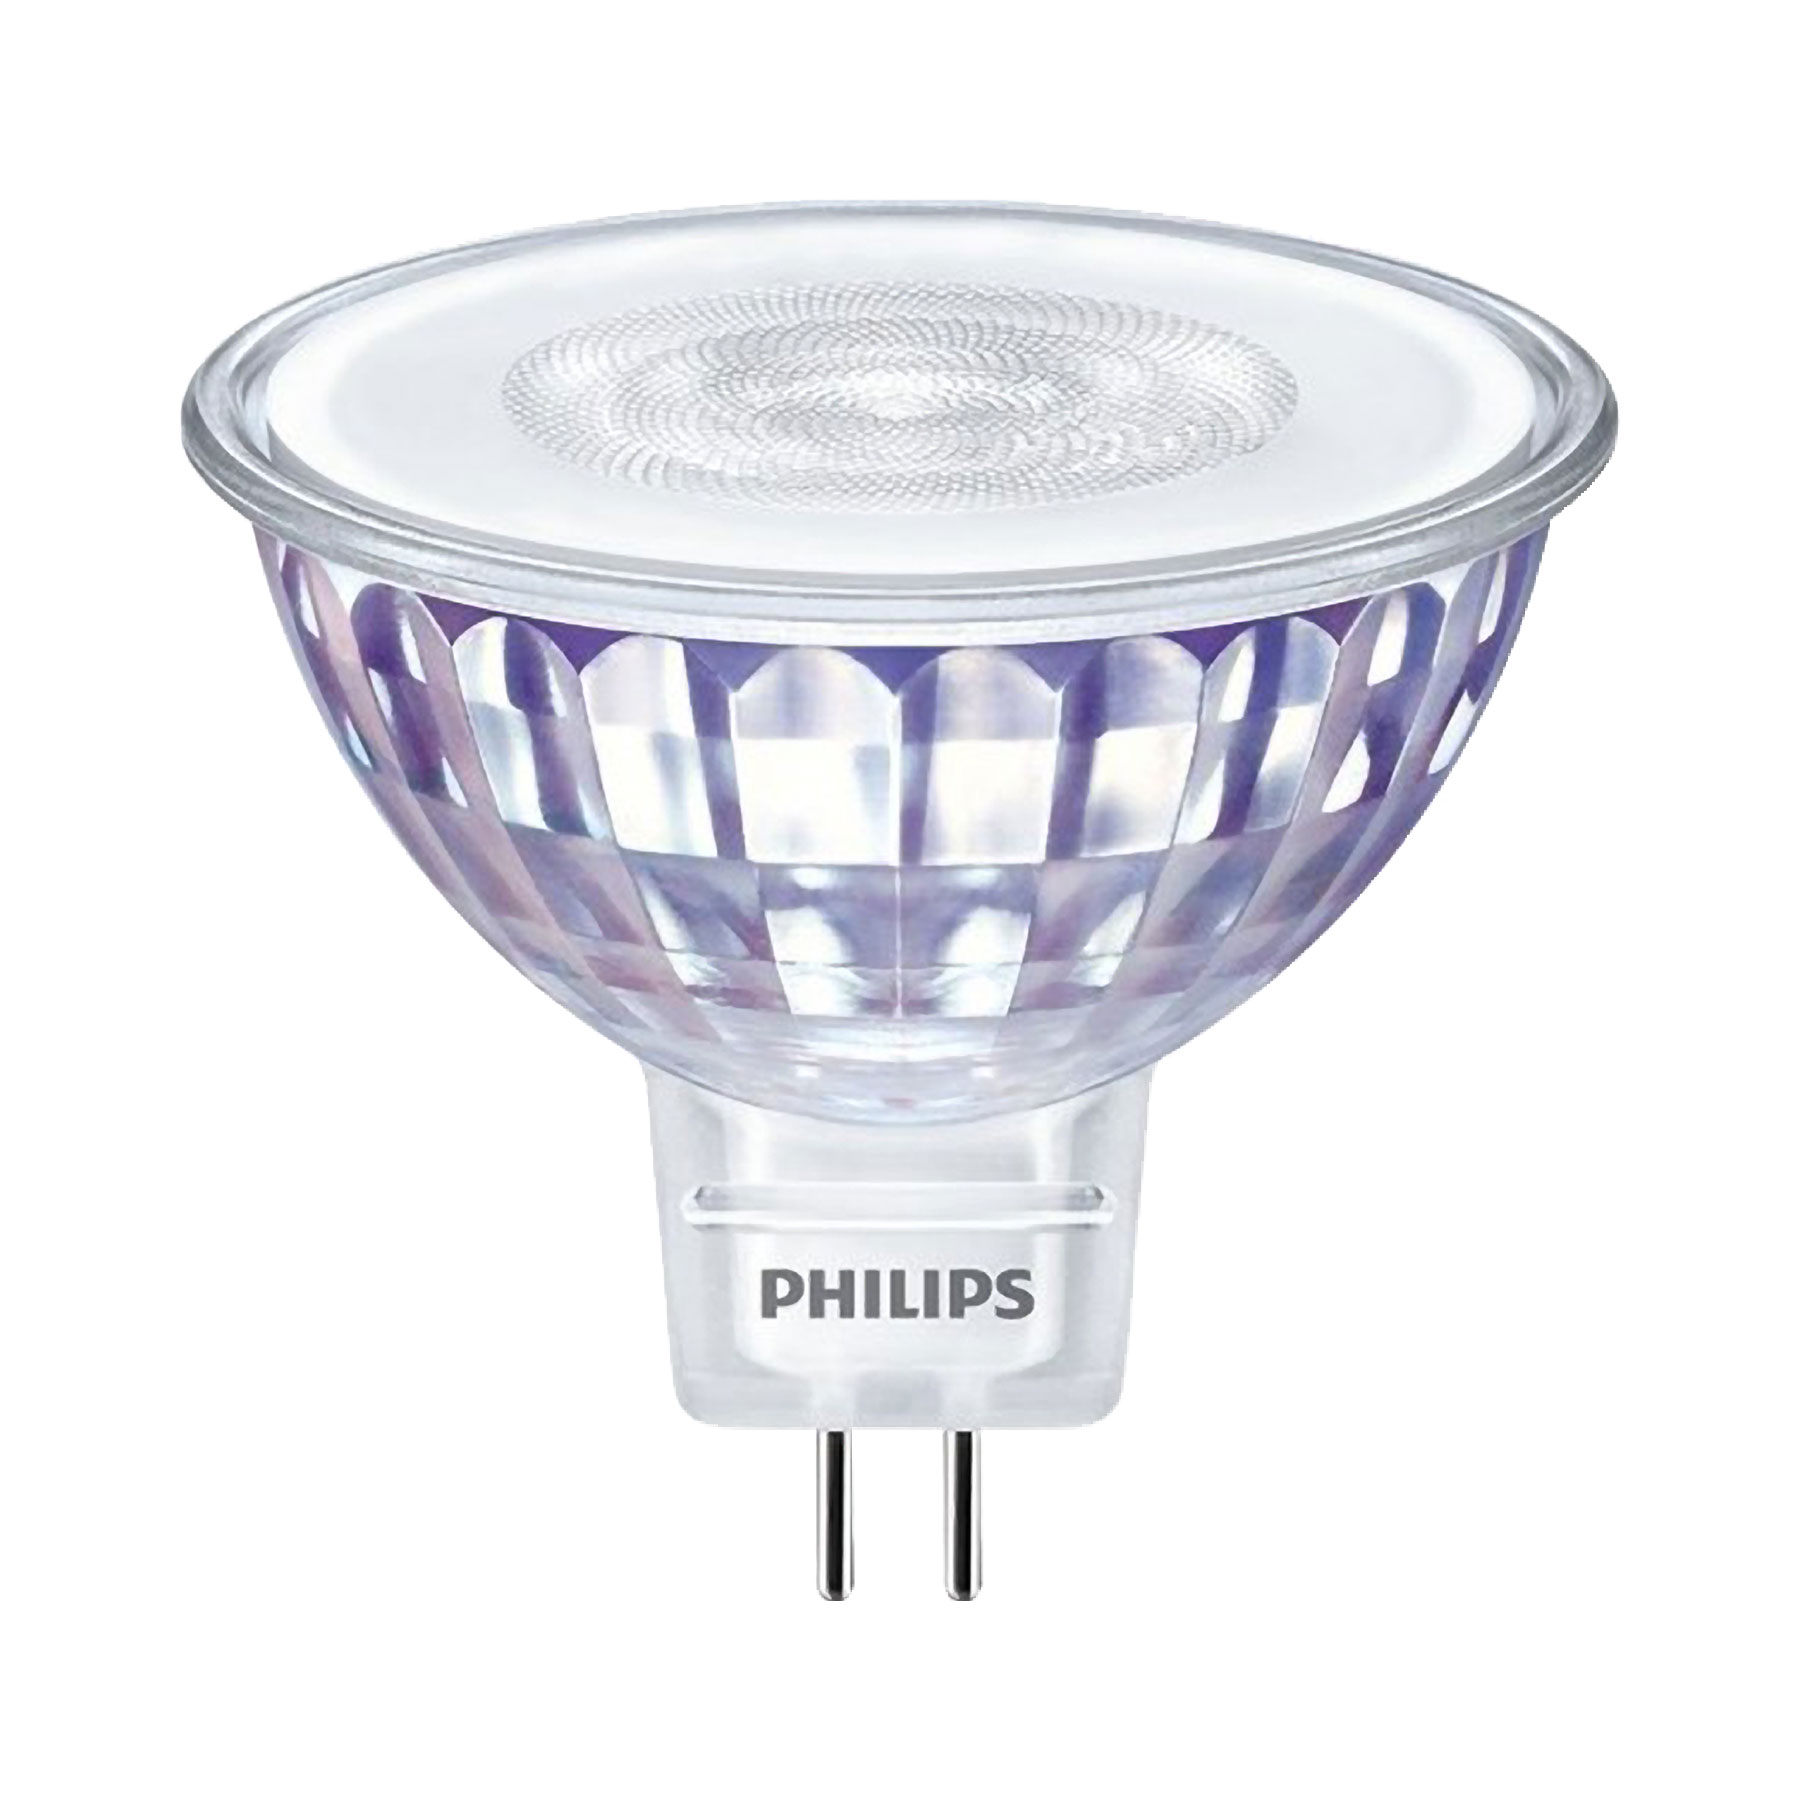 Philips Classic Glass 50W Equivalent Bright White MR16 GU5.3 LED